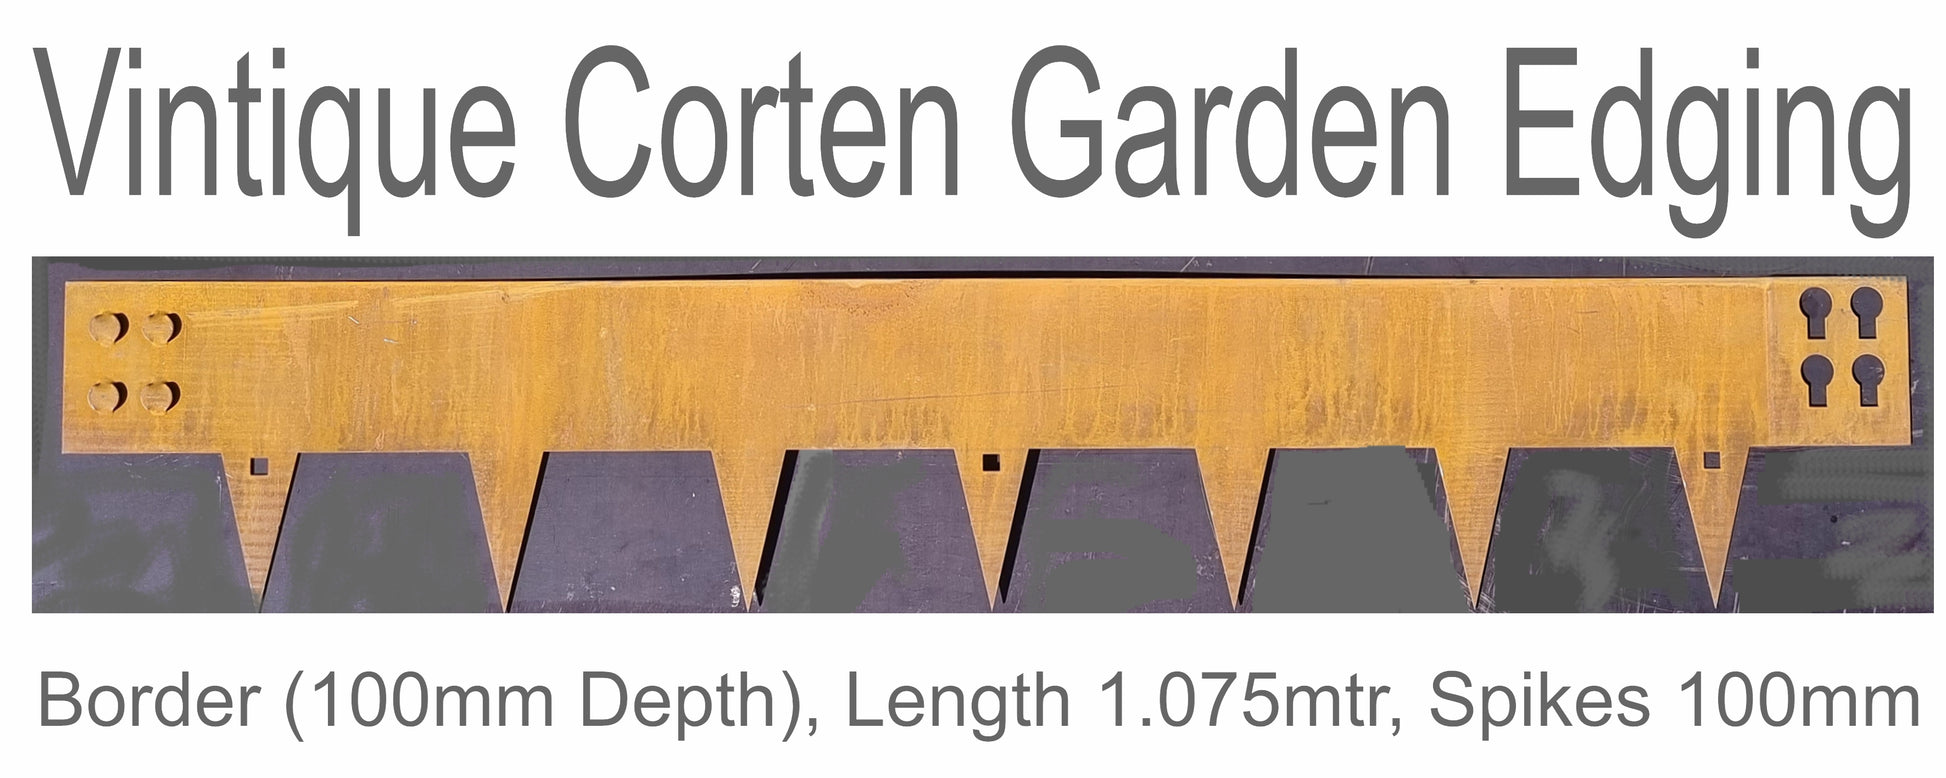 Corten Rusted Garden Edging 100mm x 1.075mtr length - Da Vinci Chalk Paint & Rustic home decor